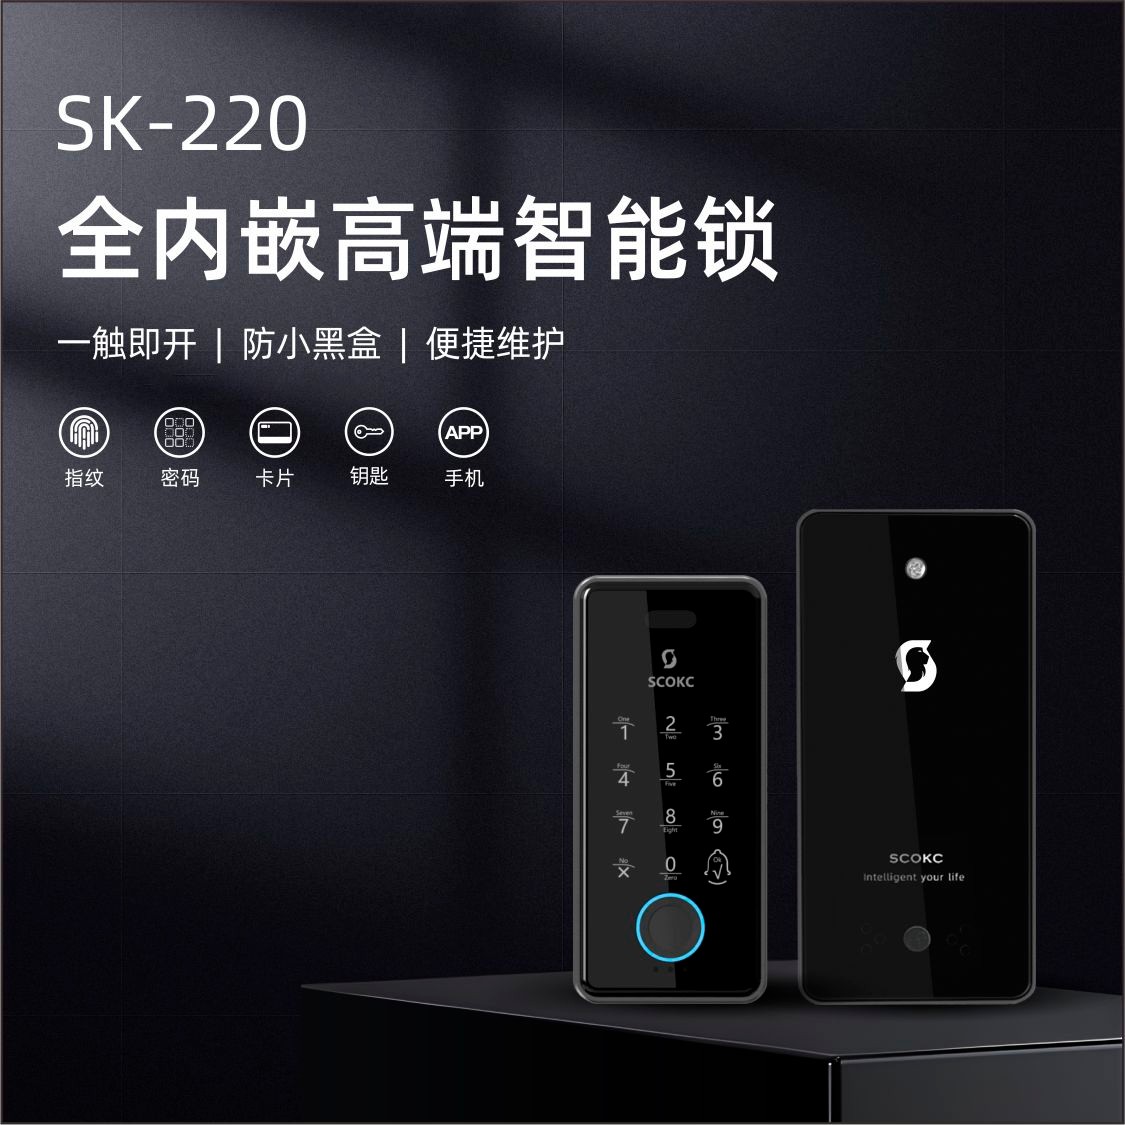 SK-220 全内嵌高端智能锁